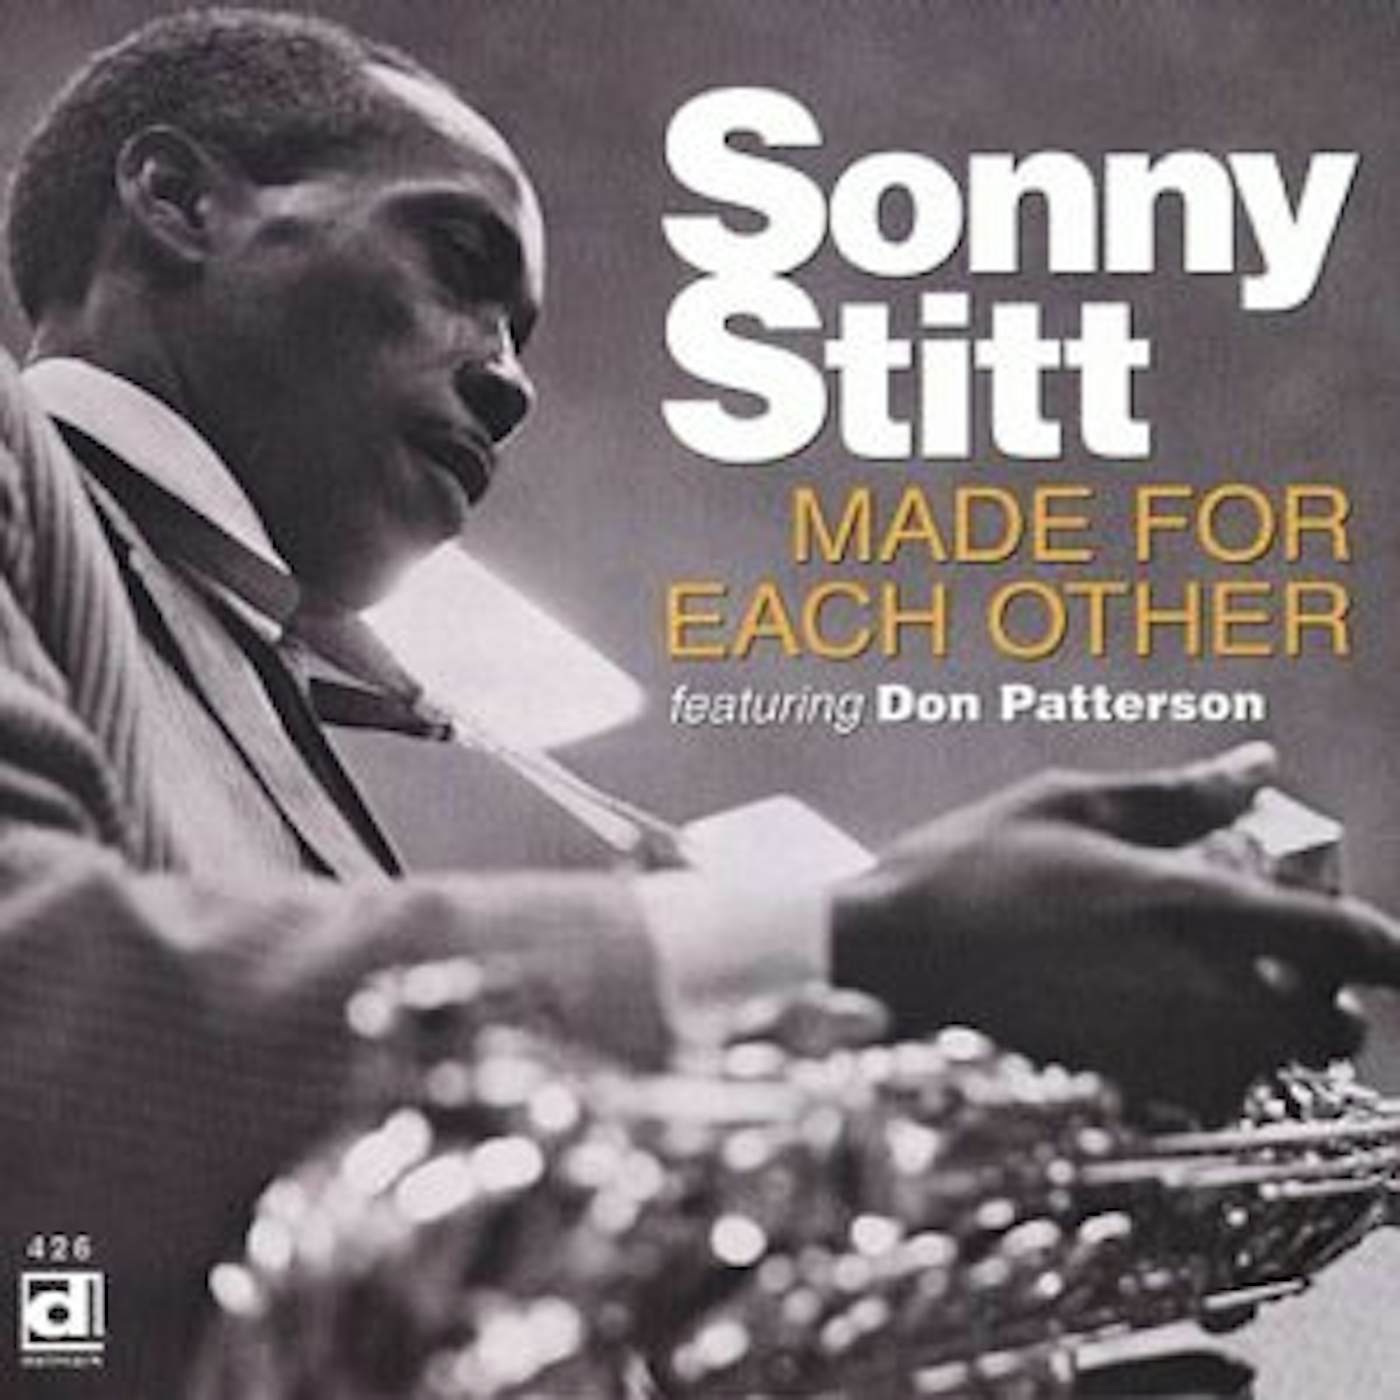 Sonny Stitt MADE FOR EACH OTHER CD